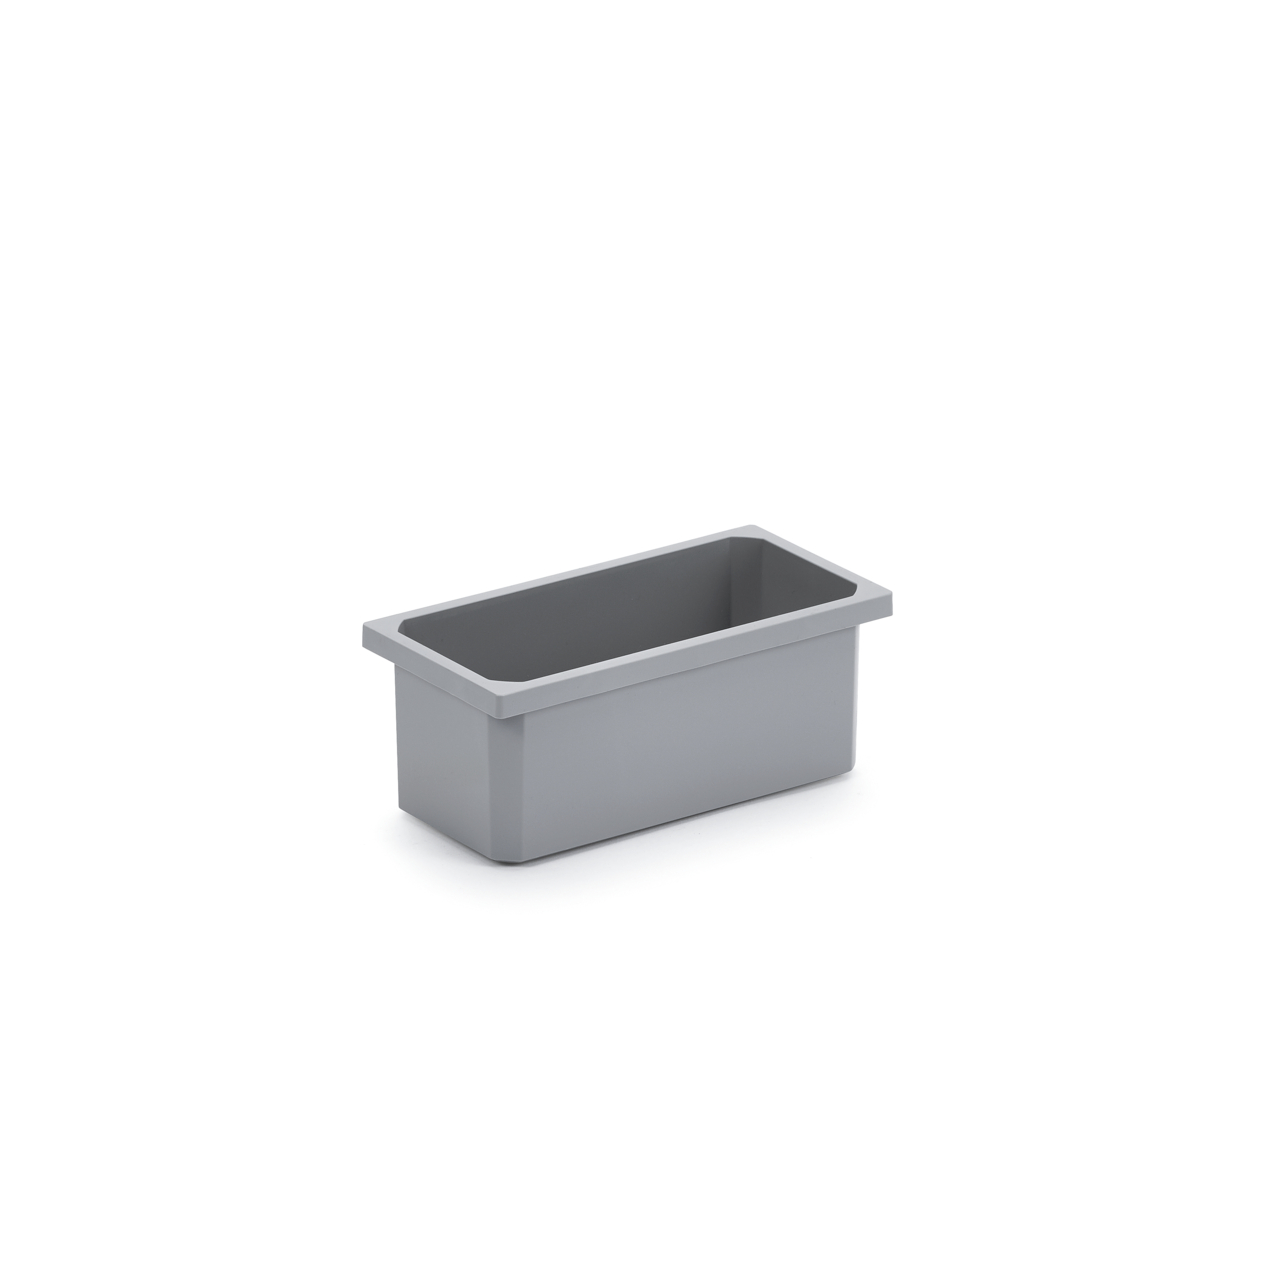 Storage box, dark grey, 1.2 liters